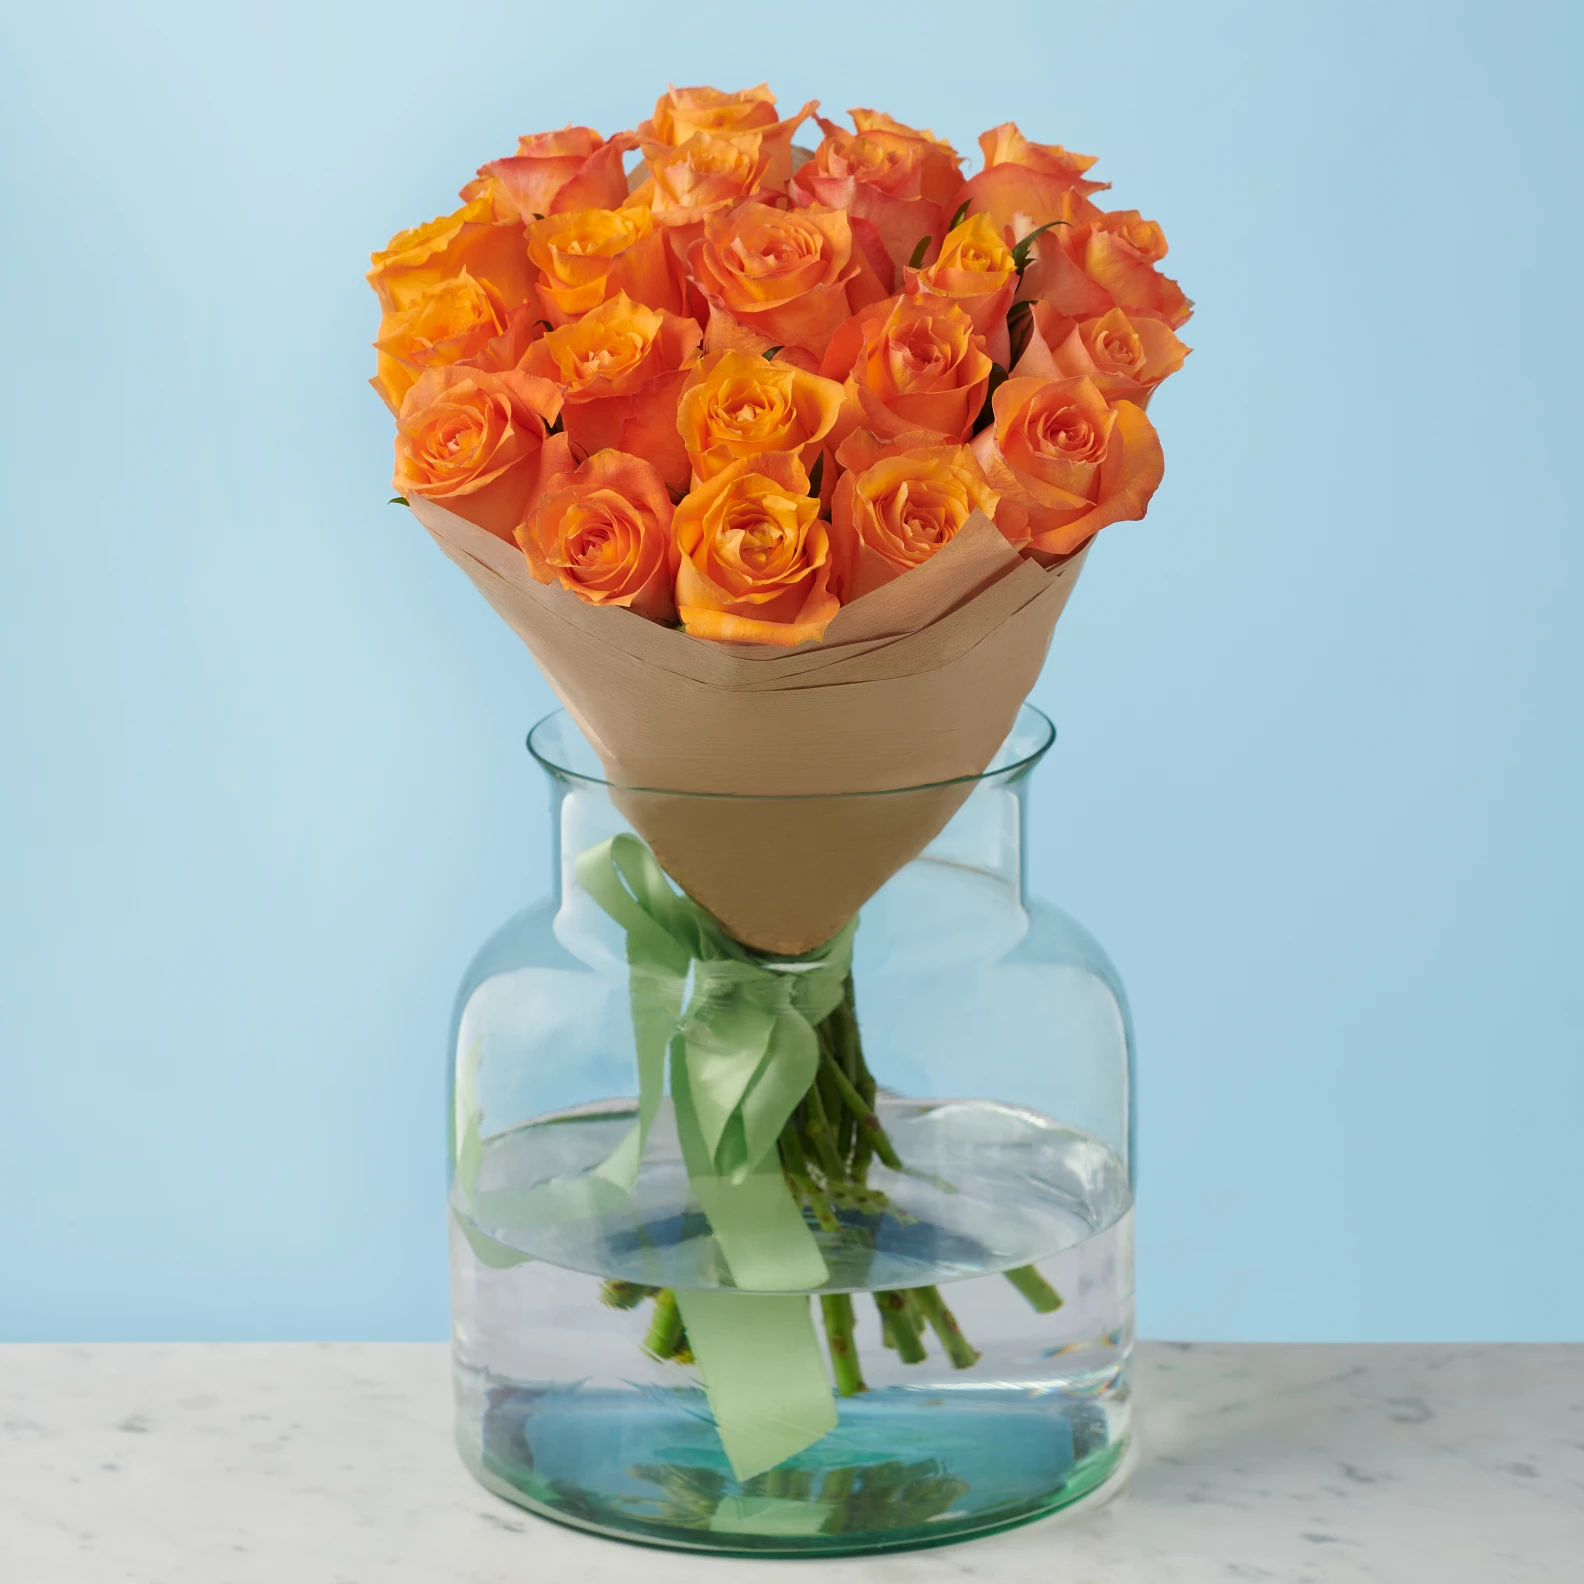 20 Premium Orange Roses - image №2